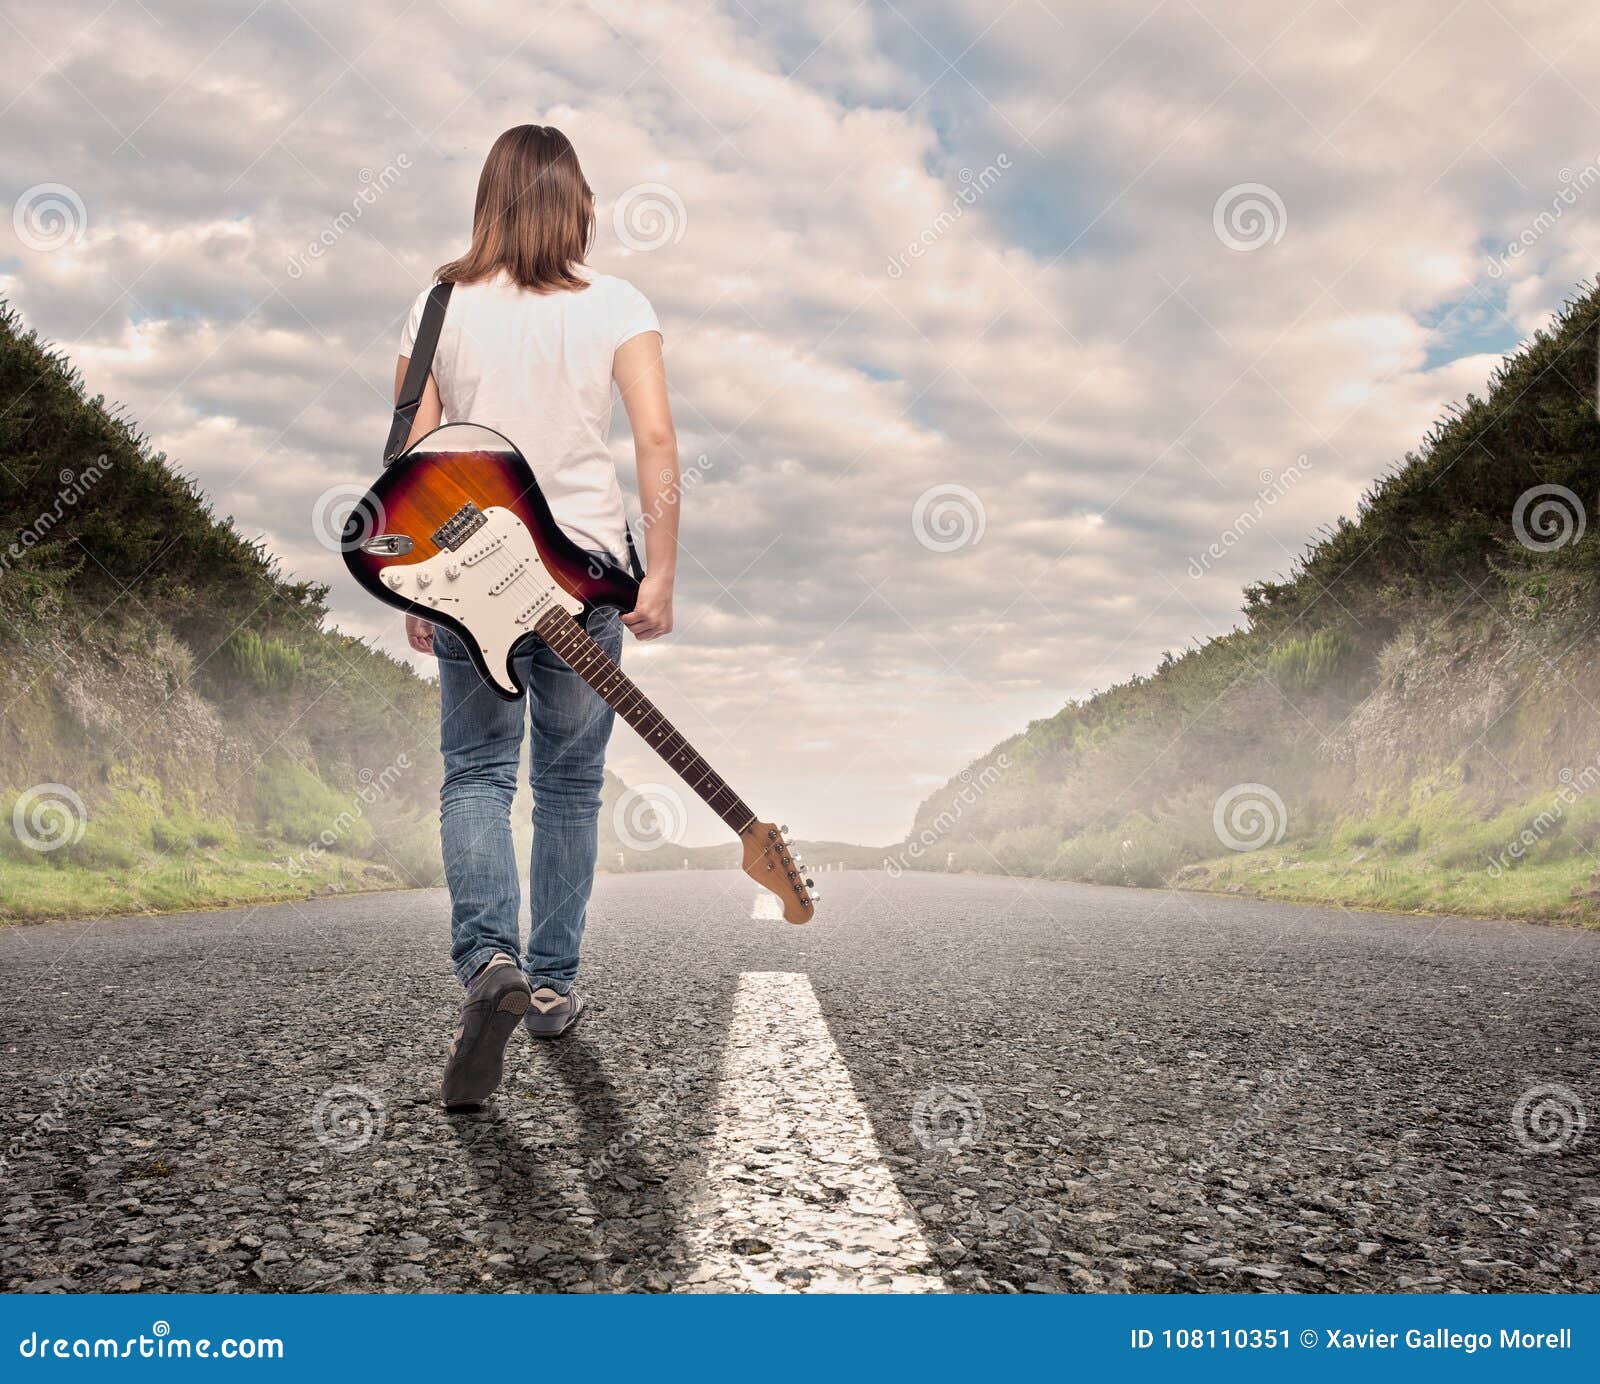 吉他图片唯美 背着吉他远去背影图片_男女弹吉他背景图